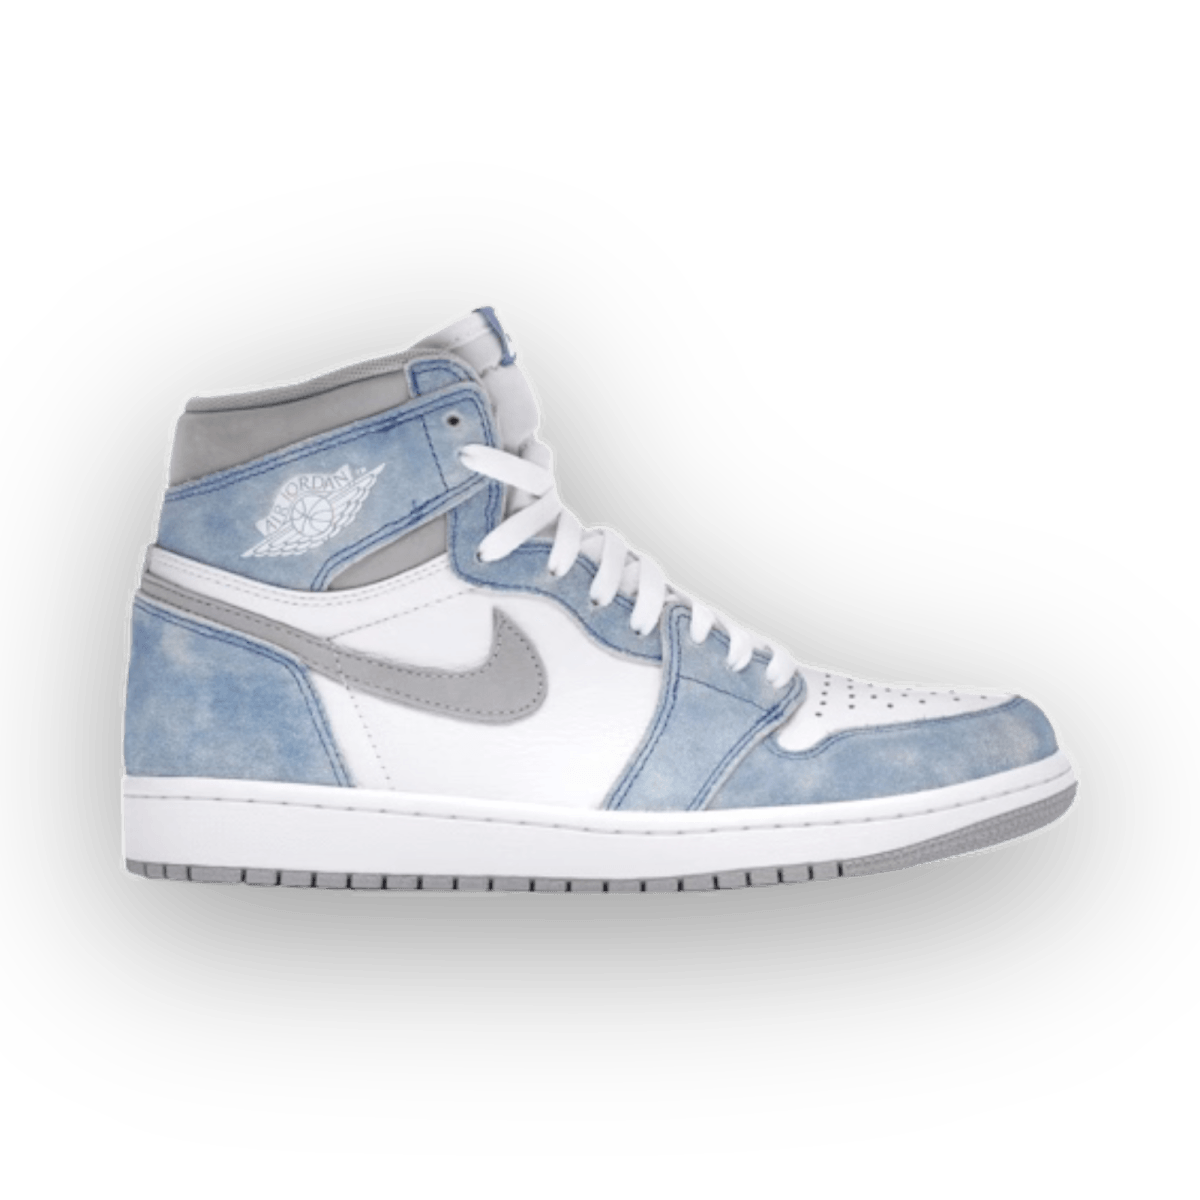 Jordan 1 Retro High Hyper Royal - Grade School - High Sneaker - Jawns on Fire Sneakers & Streetwear